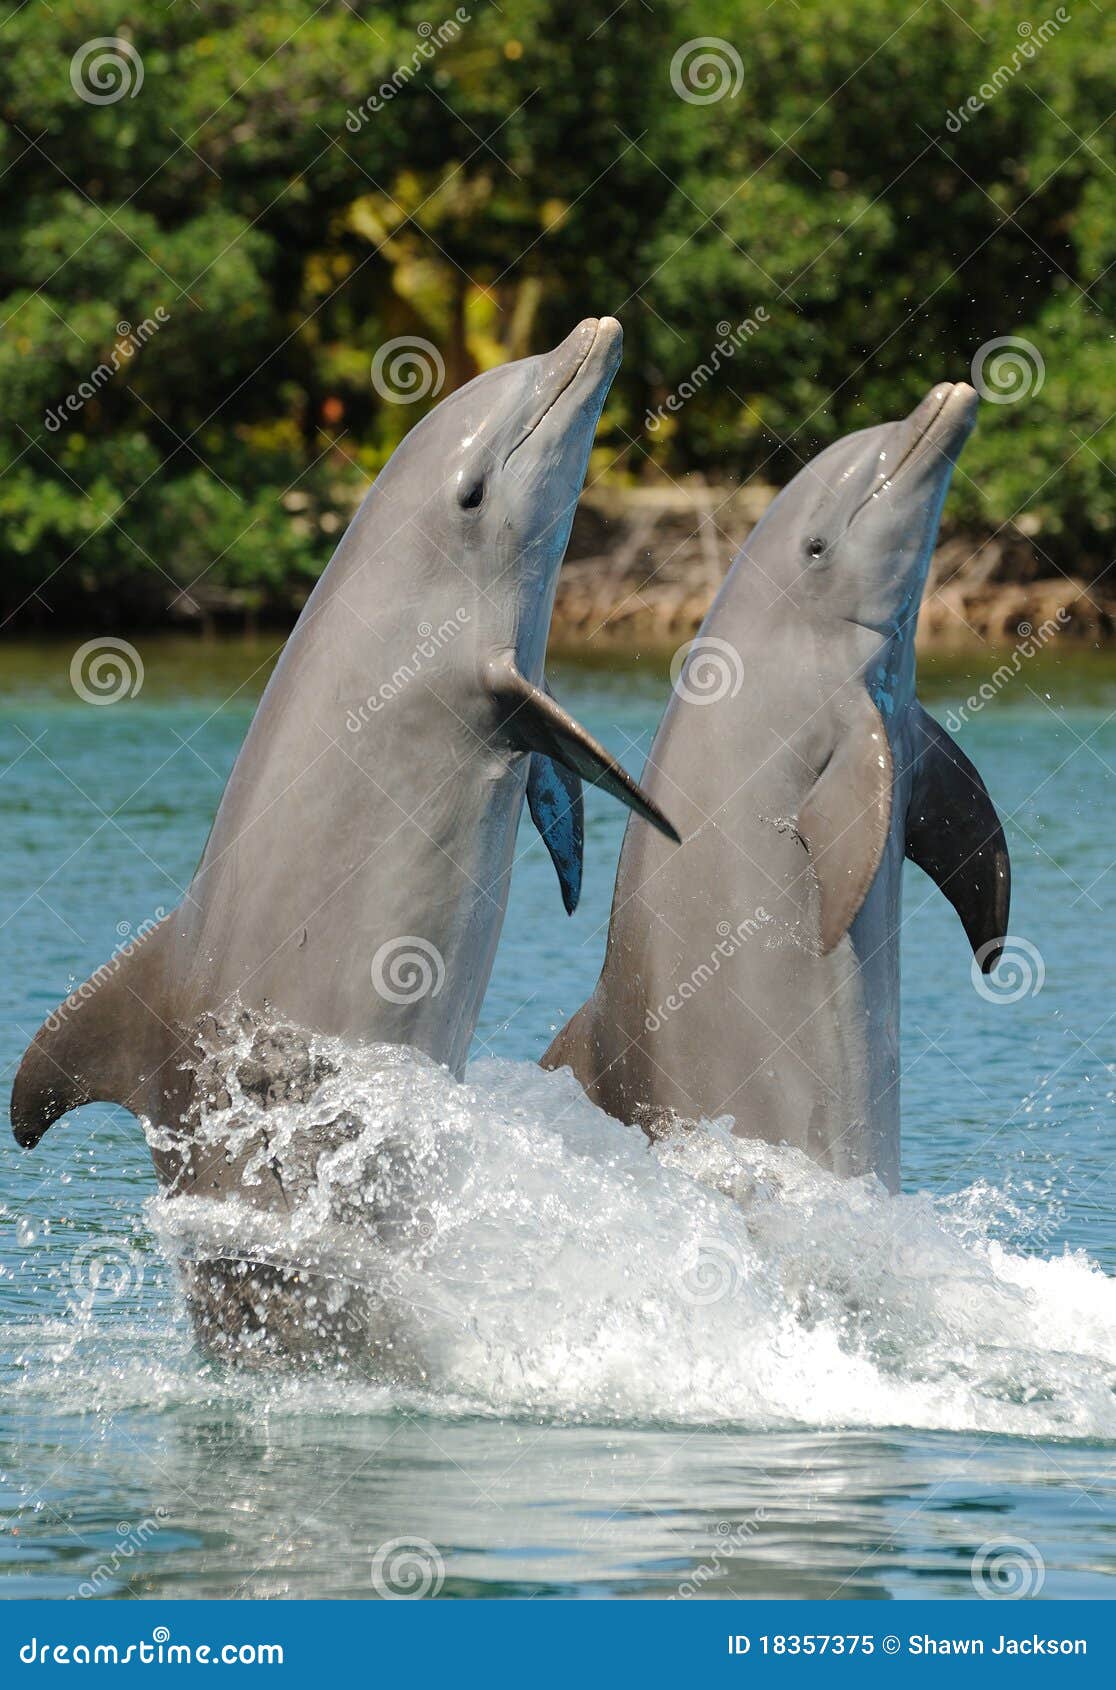 bottlenose dolphin pair